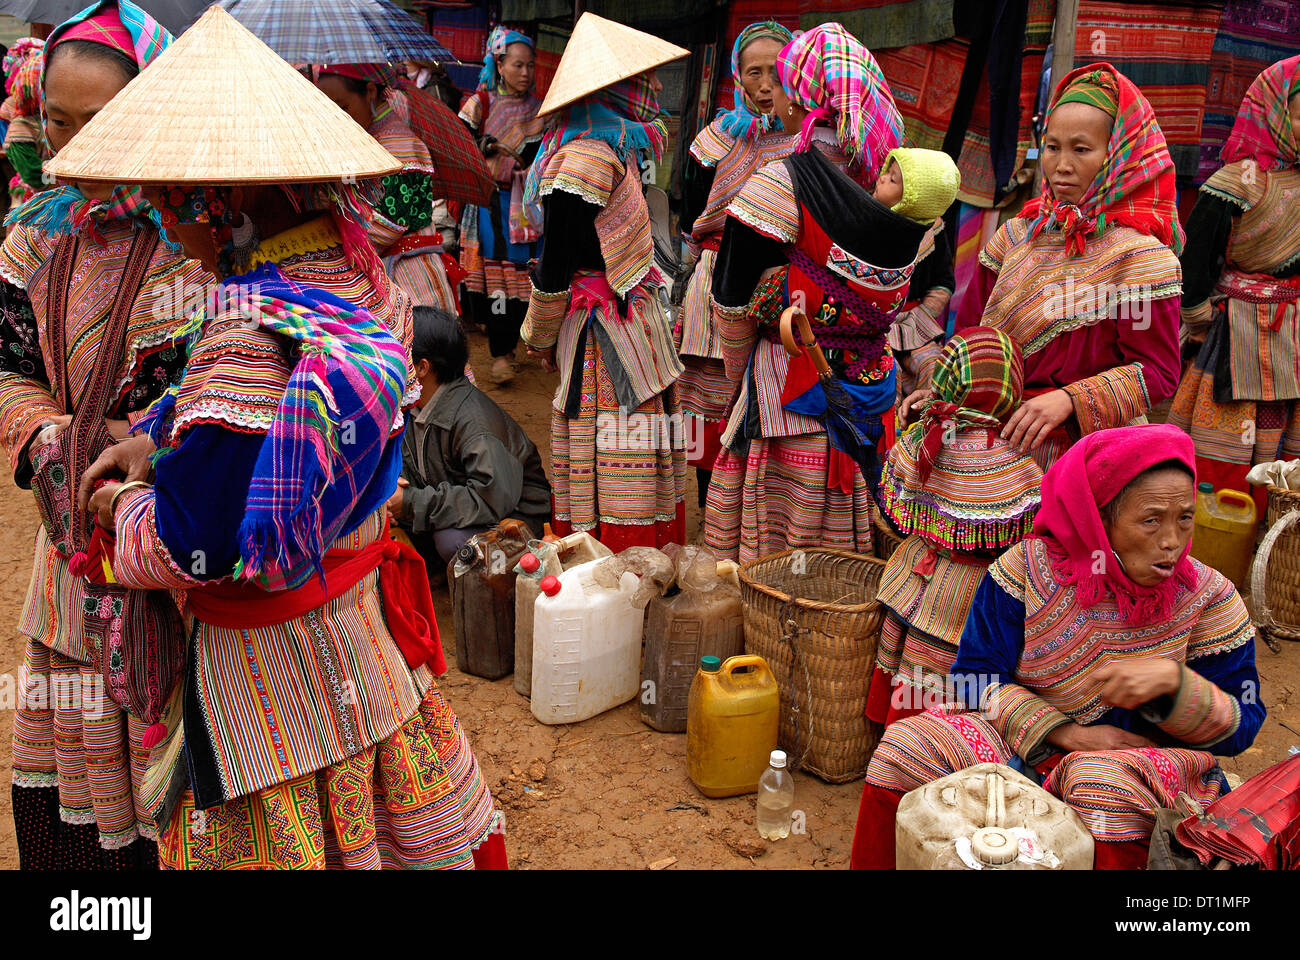 Fiore di etnia Hmong gruppo A può cau mercato, Bac ha area, Vietnam, Indocina, Asia sud-orientale, Asia Foto Stock